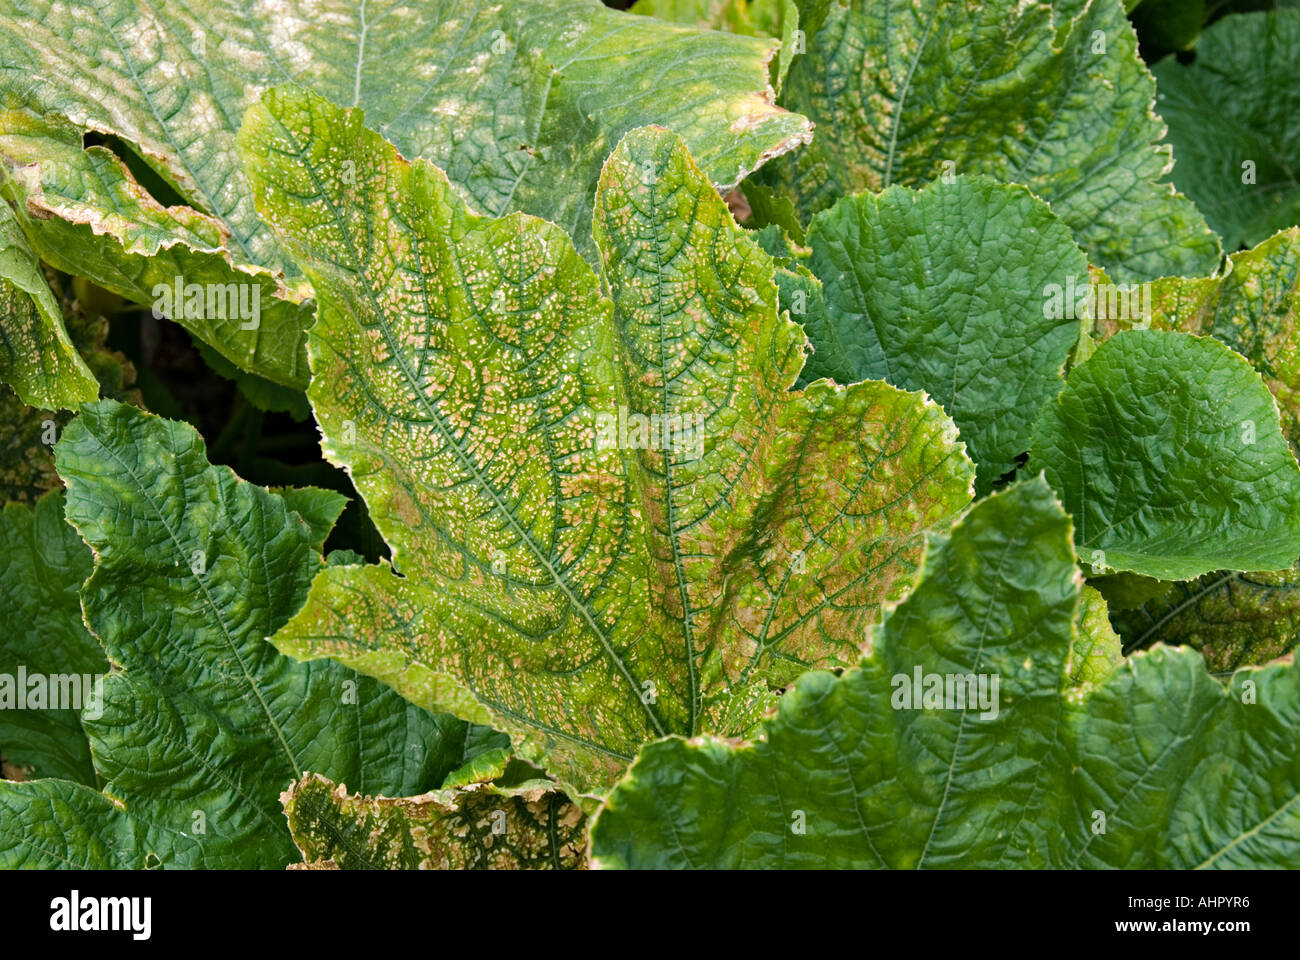 Blätter der Zucchini Pflanzen gelb Stockfotografie - Alamy